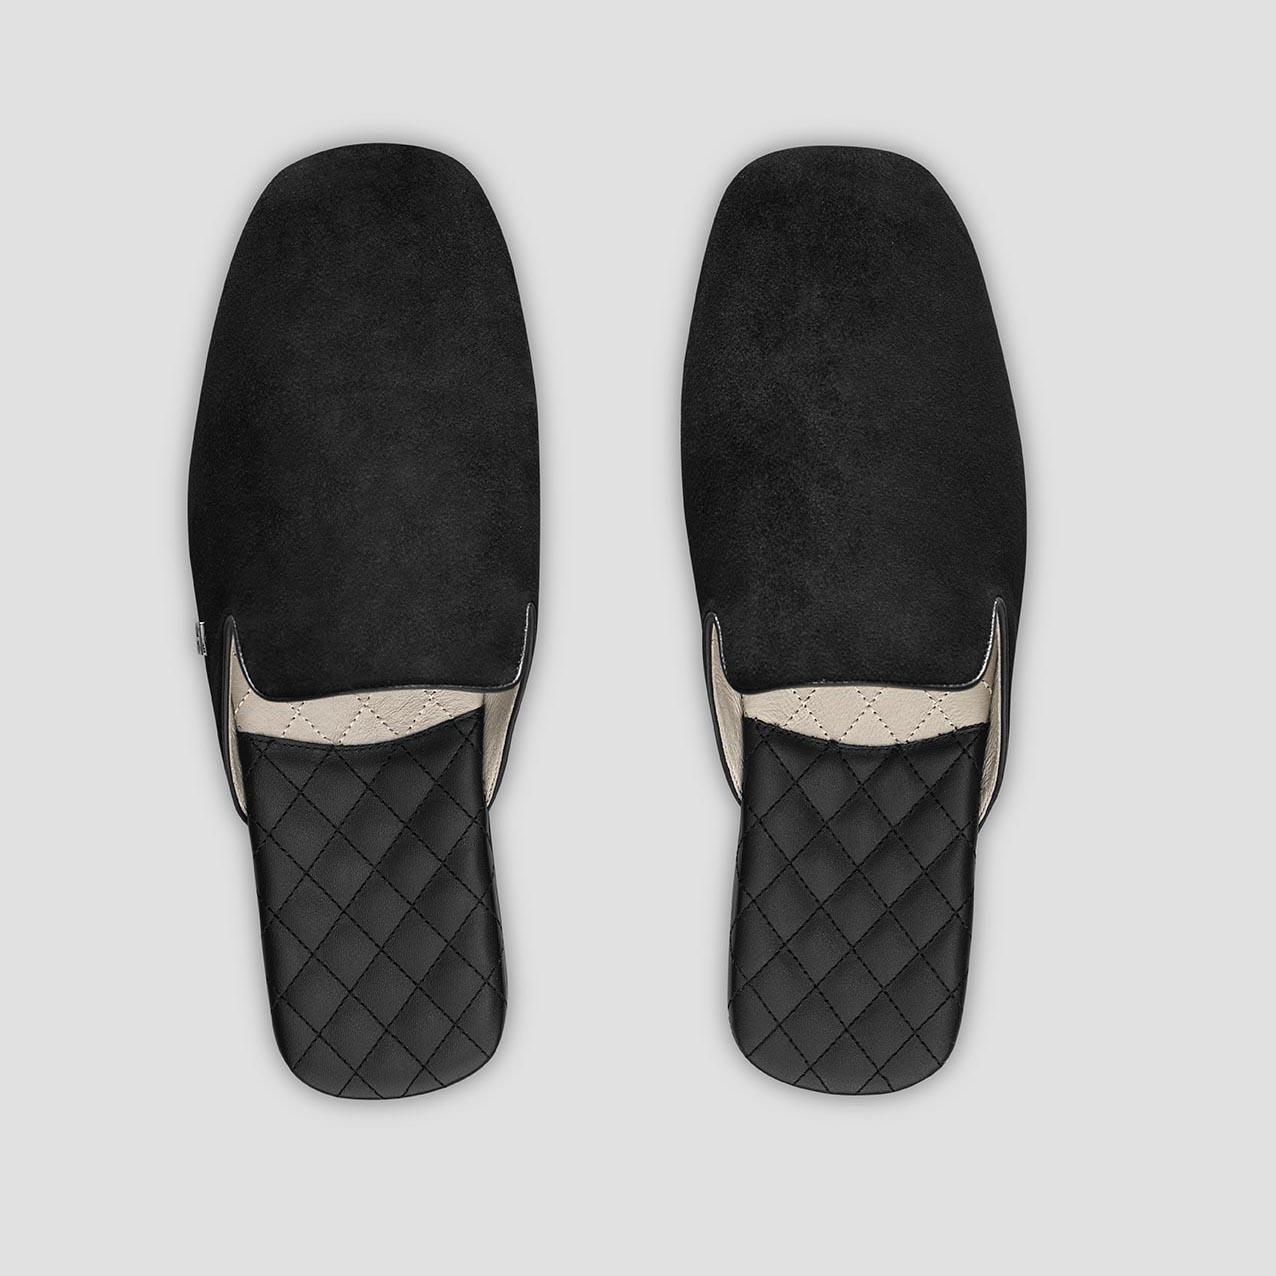 Тапочки Togas Реон черные мужские кожаные, размер 44-45 тапочки togas оливер мужские черные р 44 45